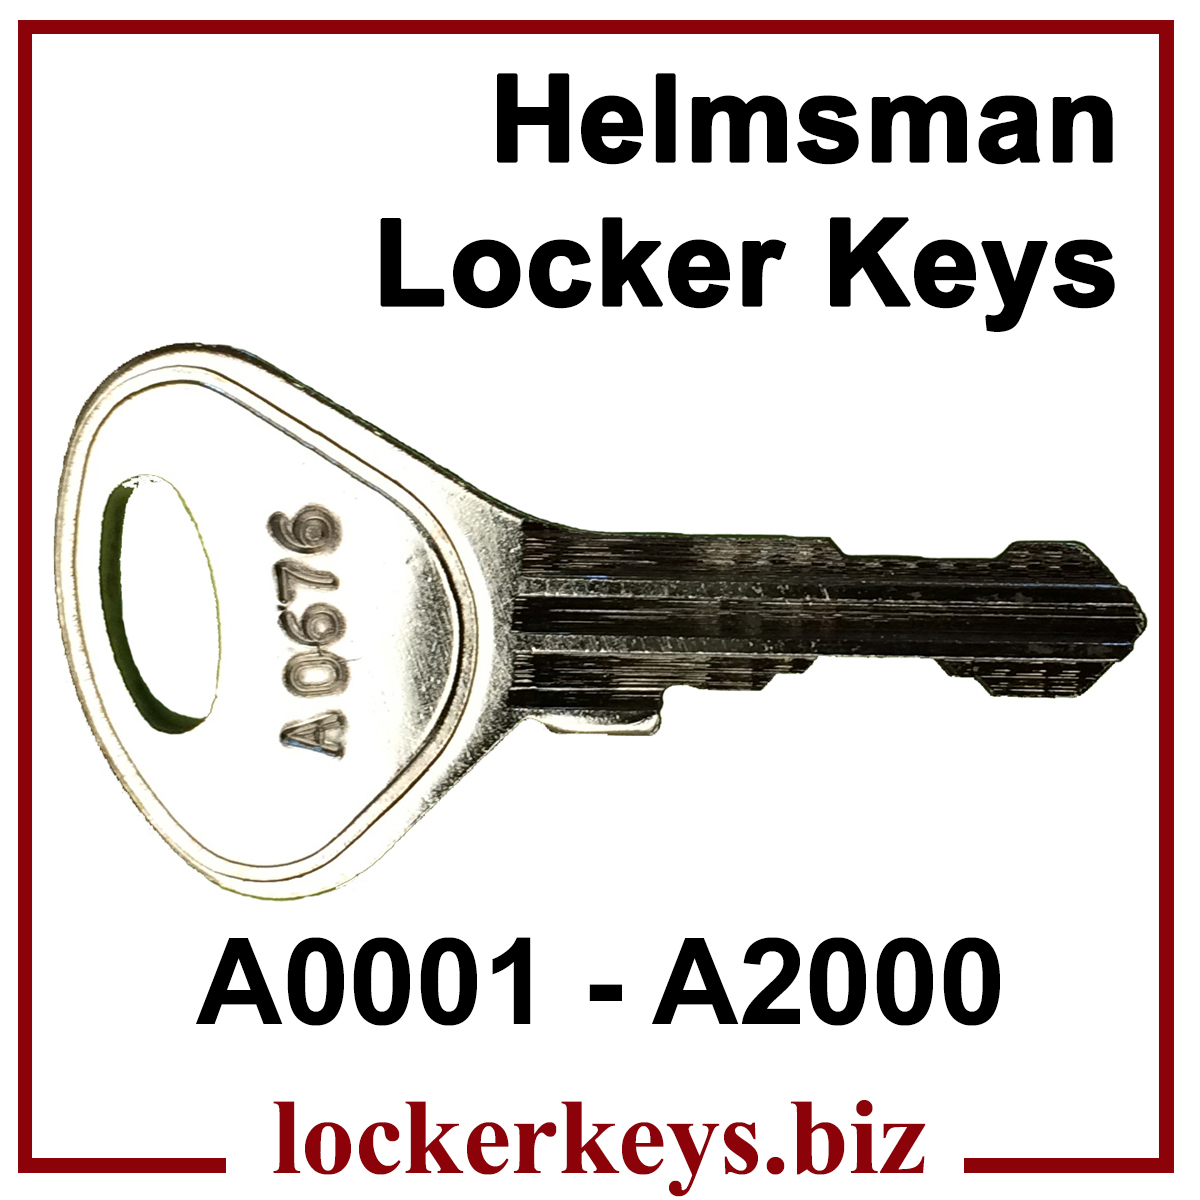 Keys for Helmsman Lockers A0001 - A2000